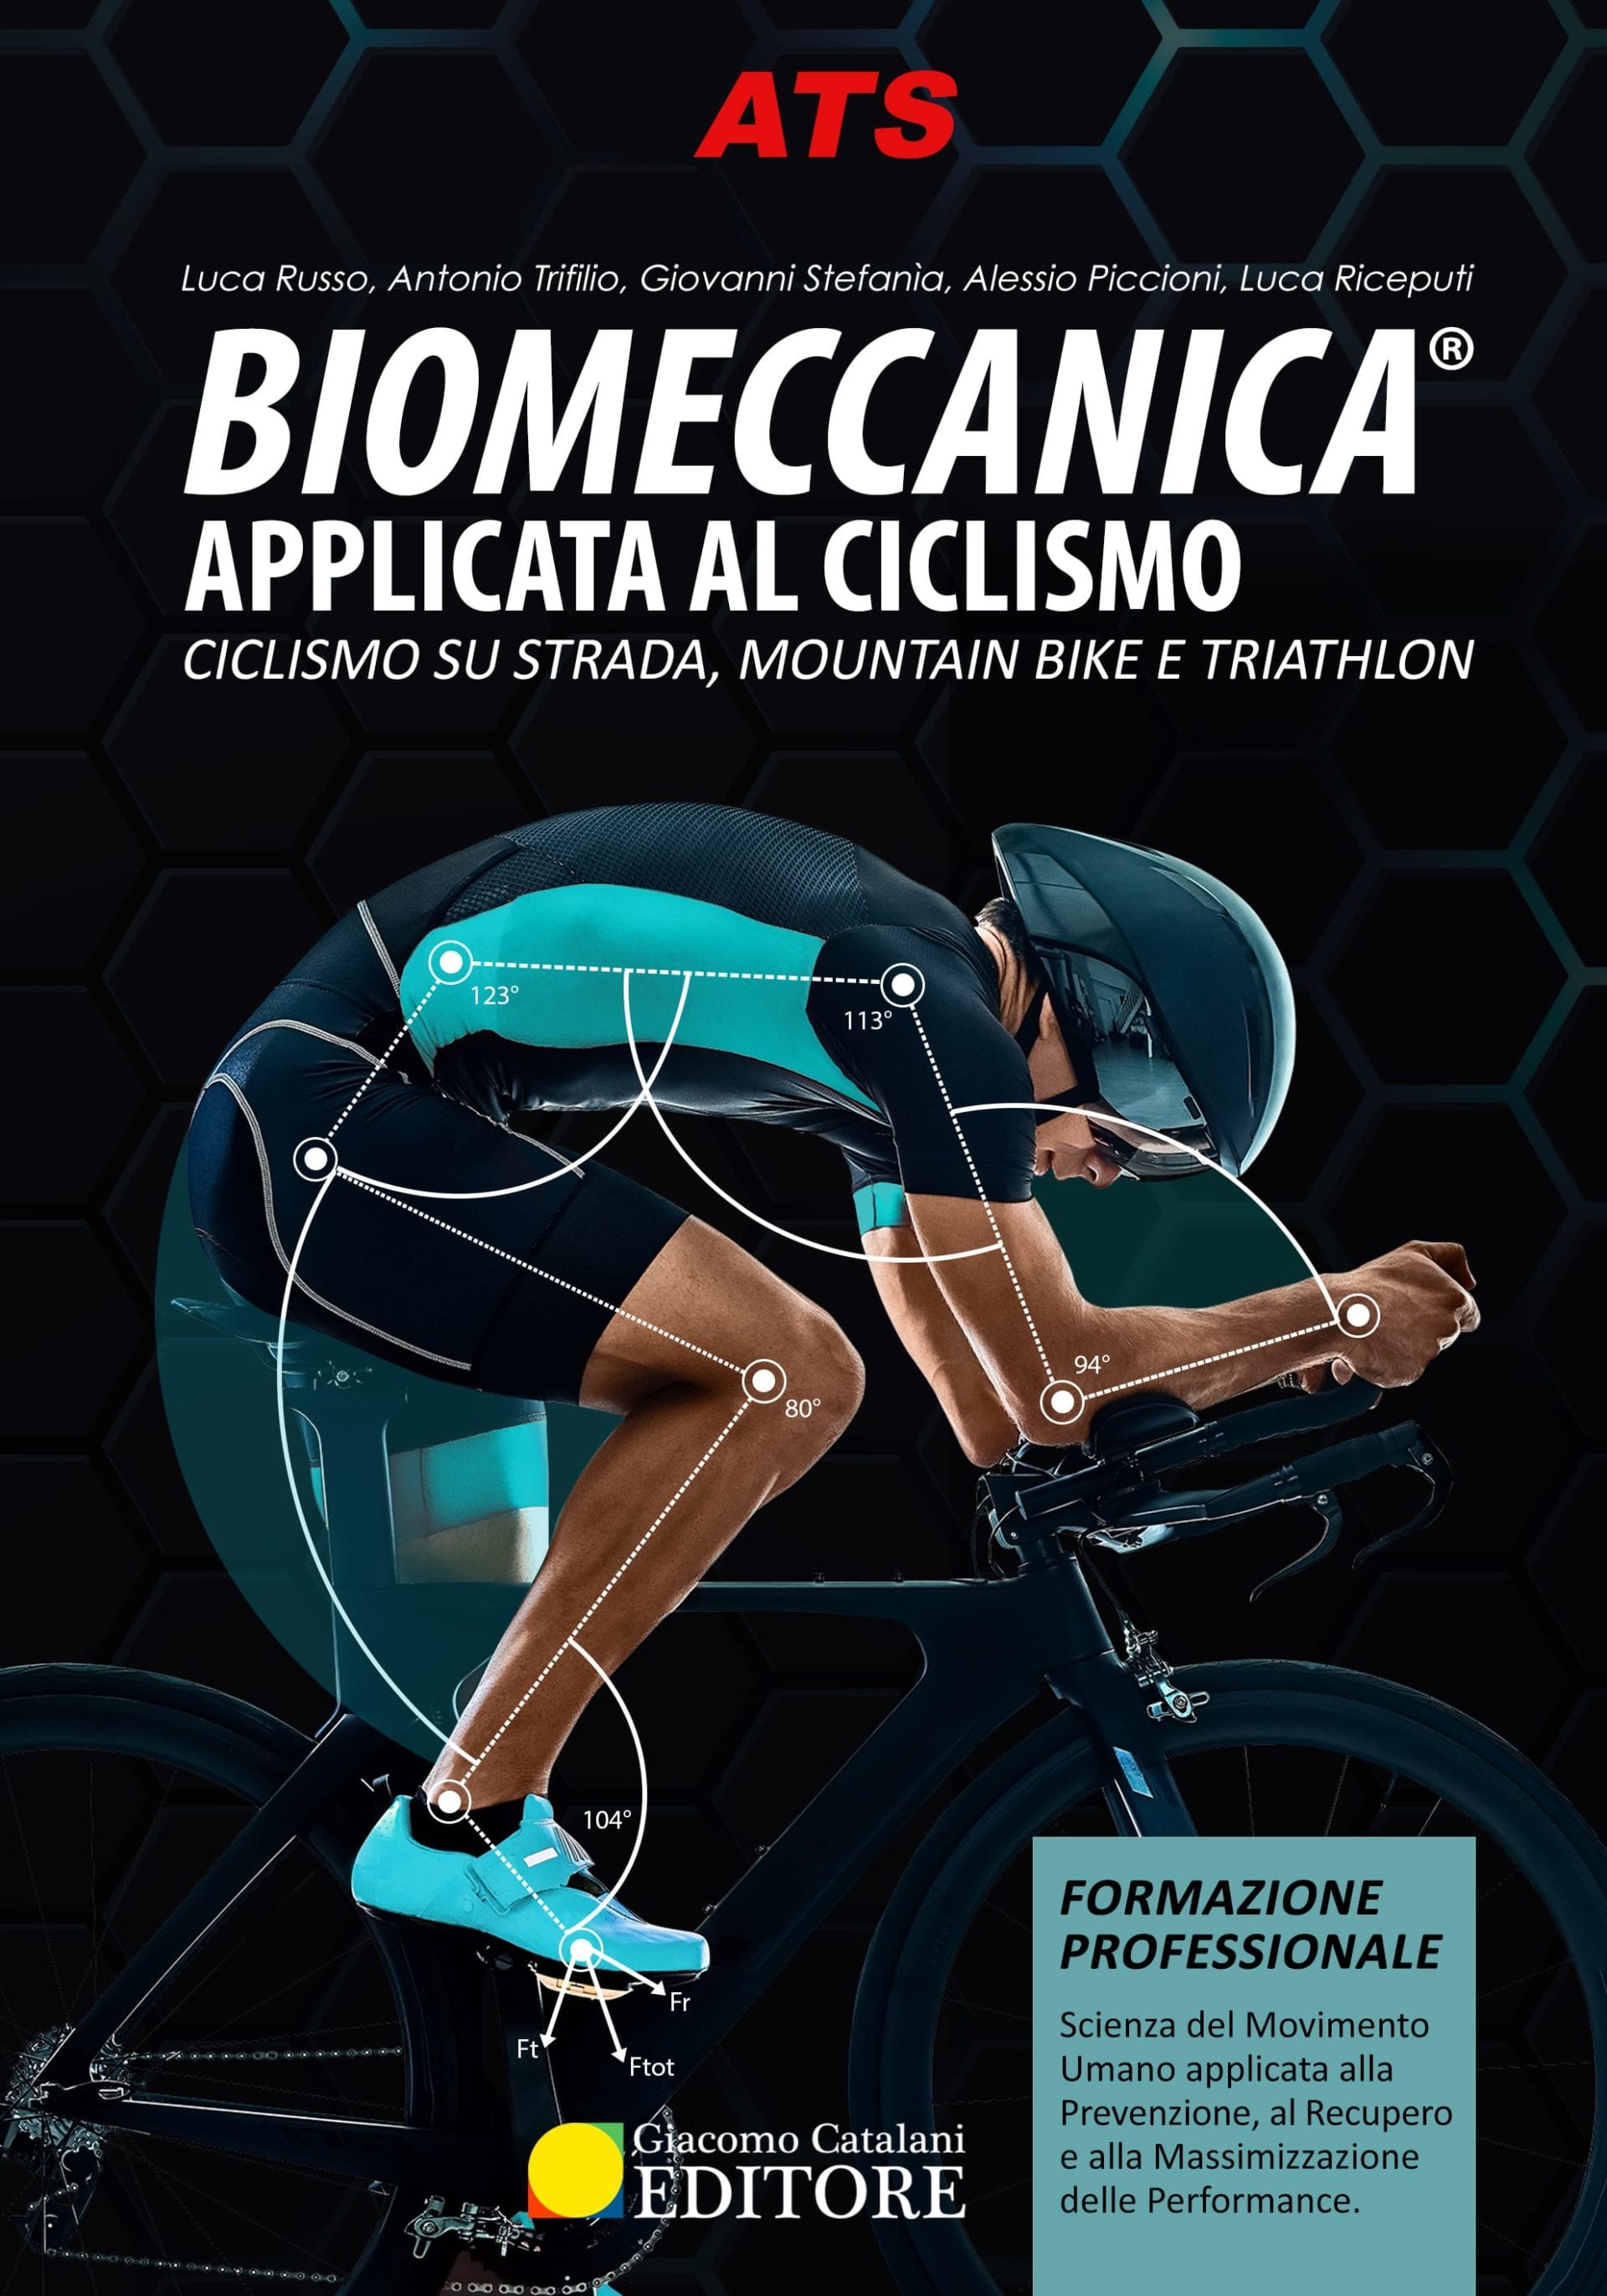 1Cover-BiomeccanicaCiclismo